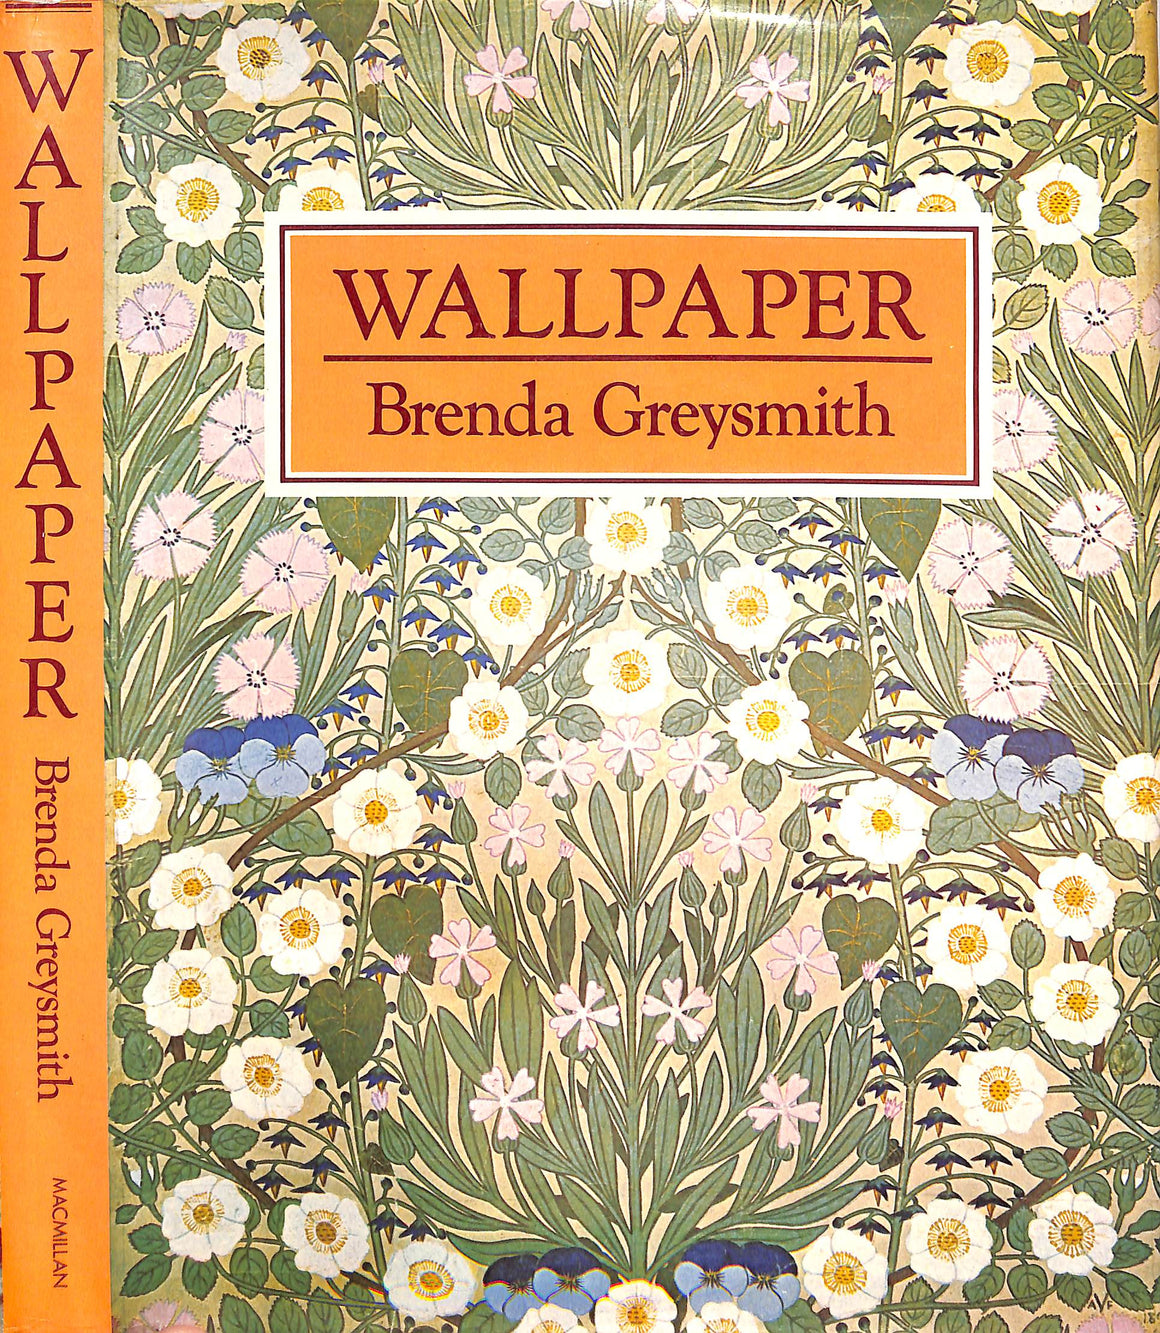 "Wallpaper" 1976 GREYSMITH, Brenda